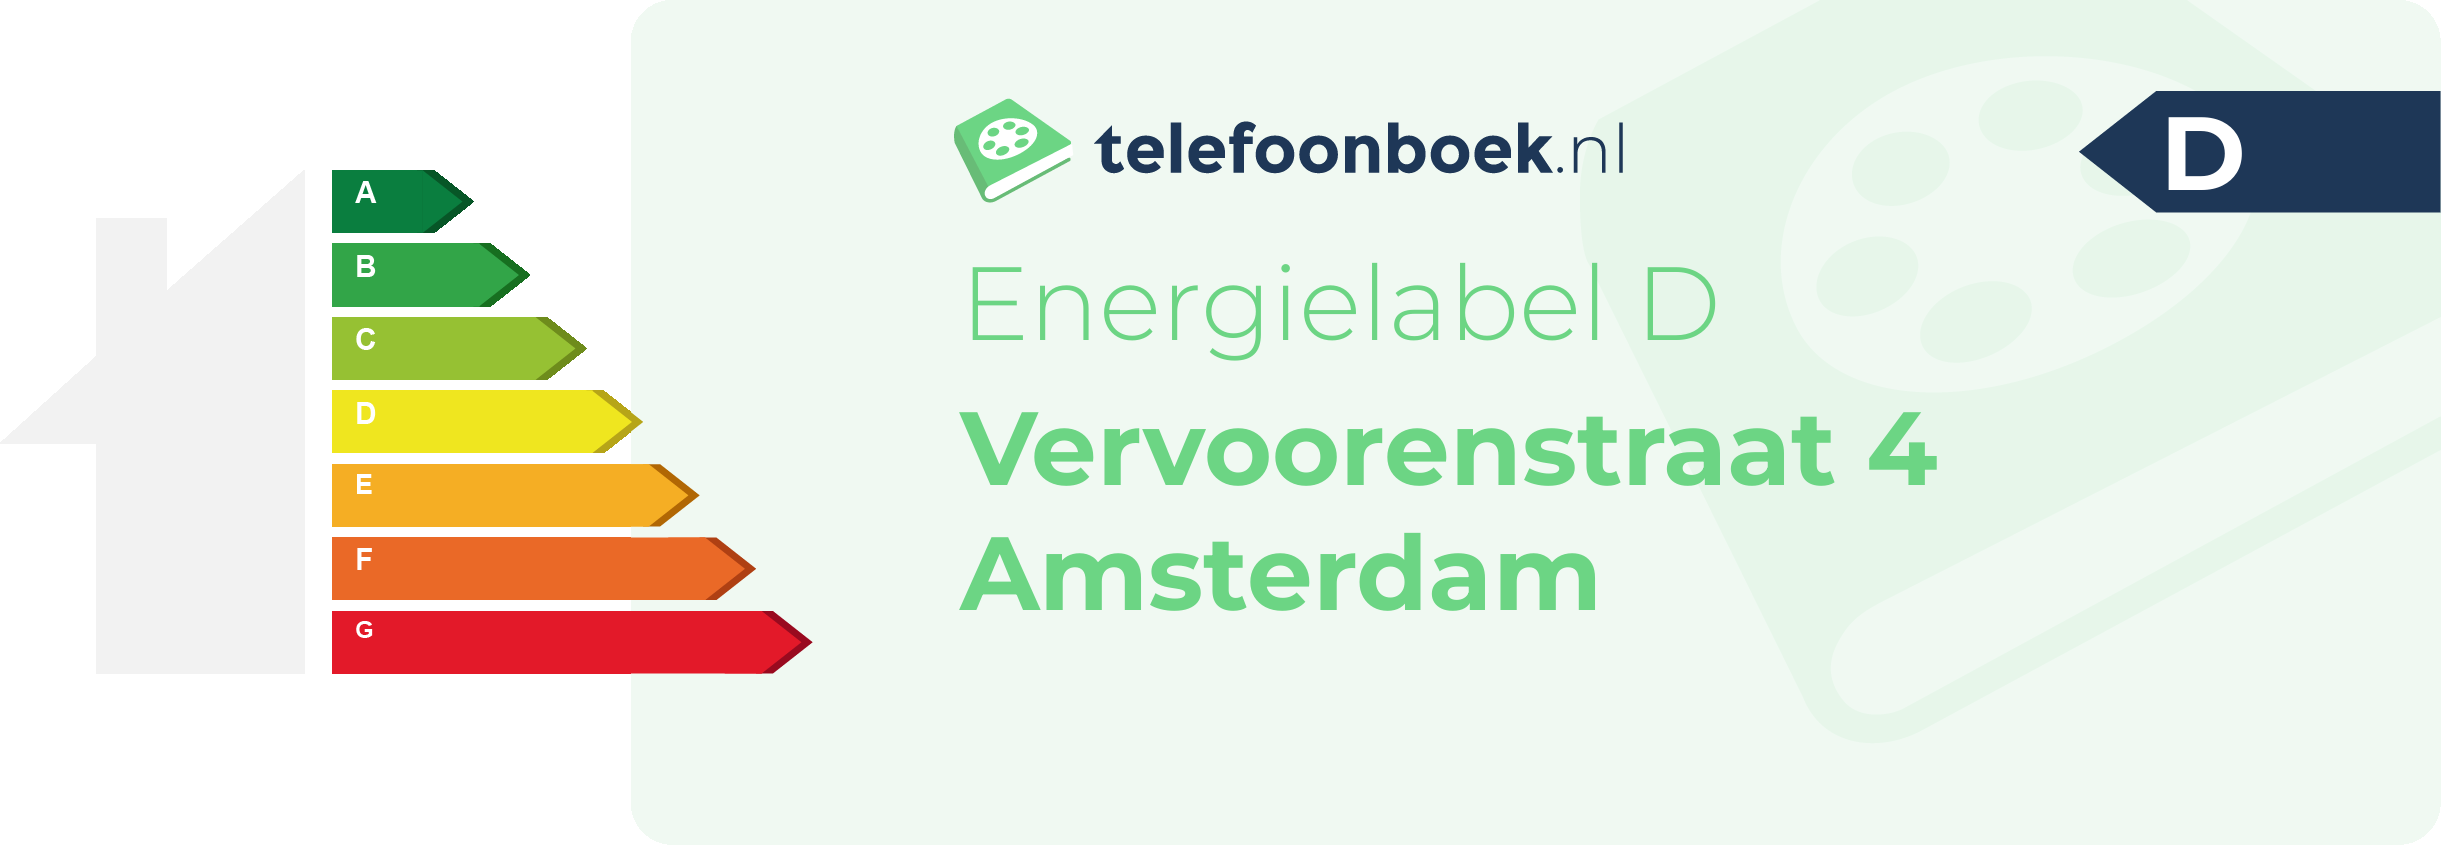 Energielabel Vervoorenstraat 4 Amsterdam